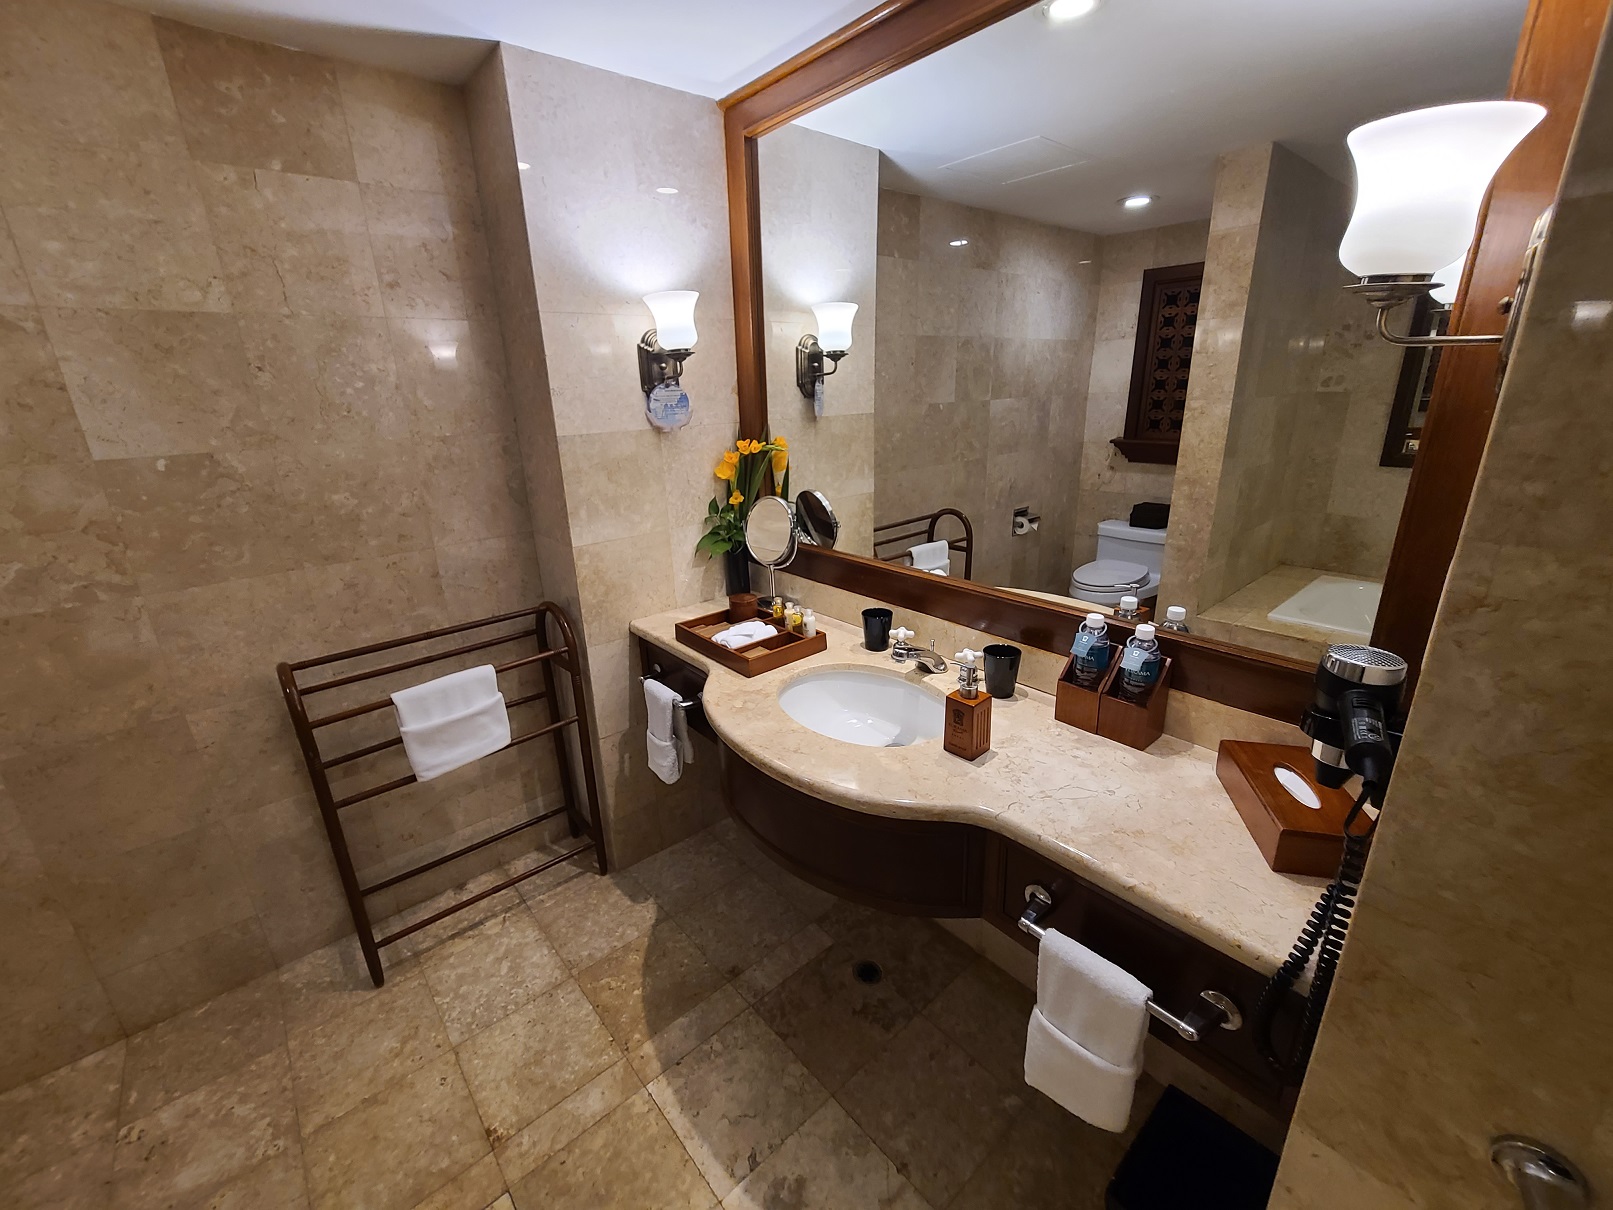 푸라마리조트의 넓고 깔끔한 화장실&#44; 욕조와 샤워실은 뒤에 따로 있을 정도로 넓었다.